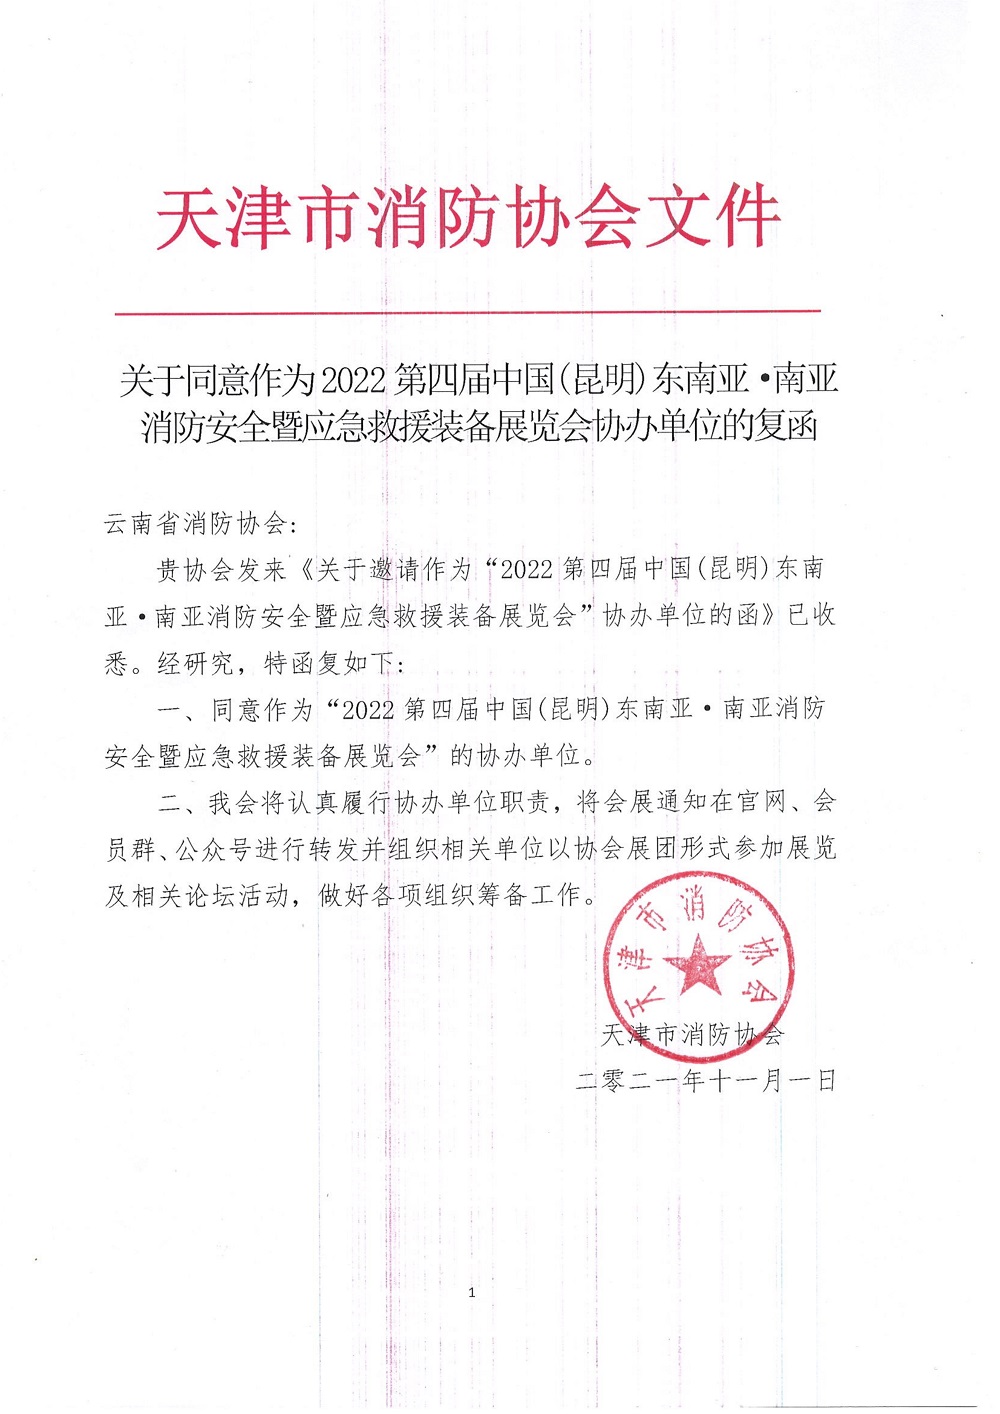 天津市消防协会协办2022昆明国际消防应急展